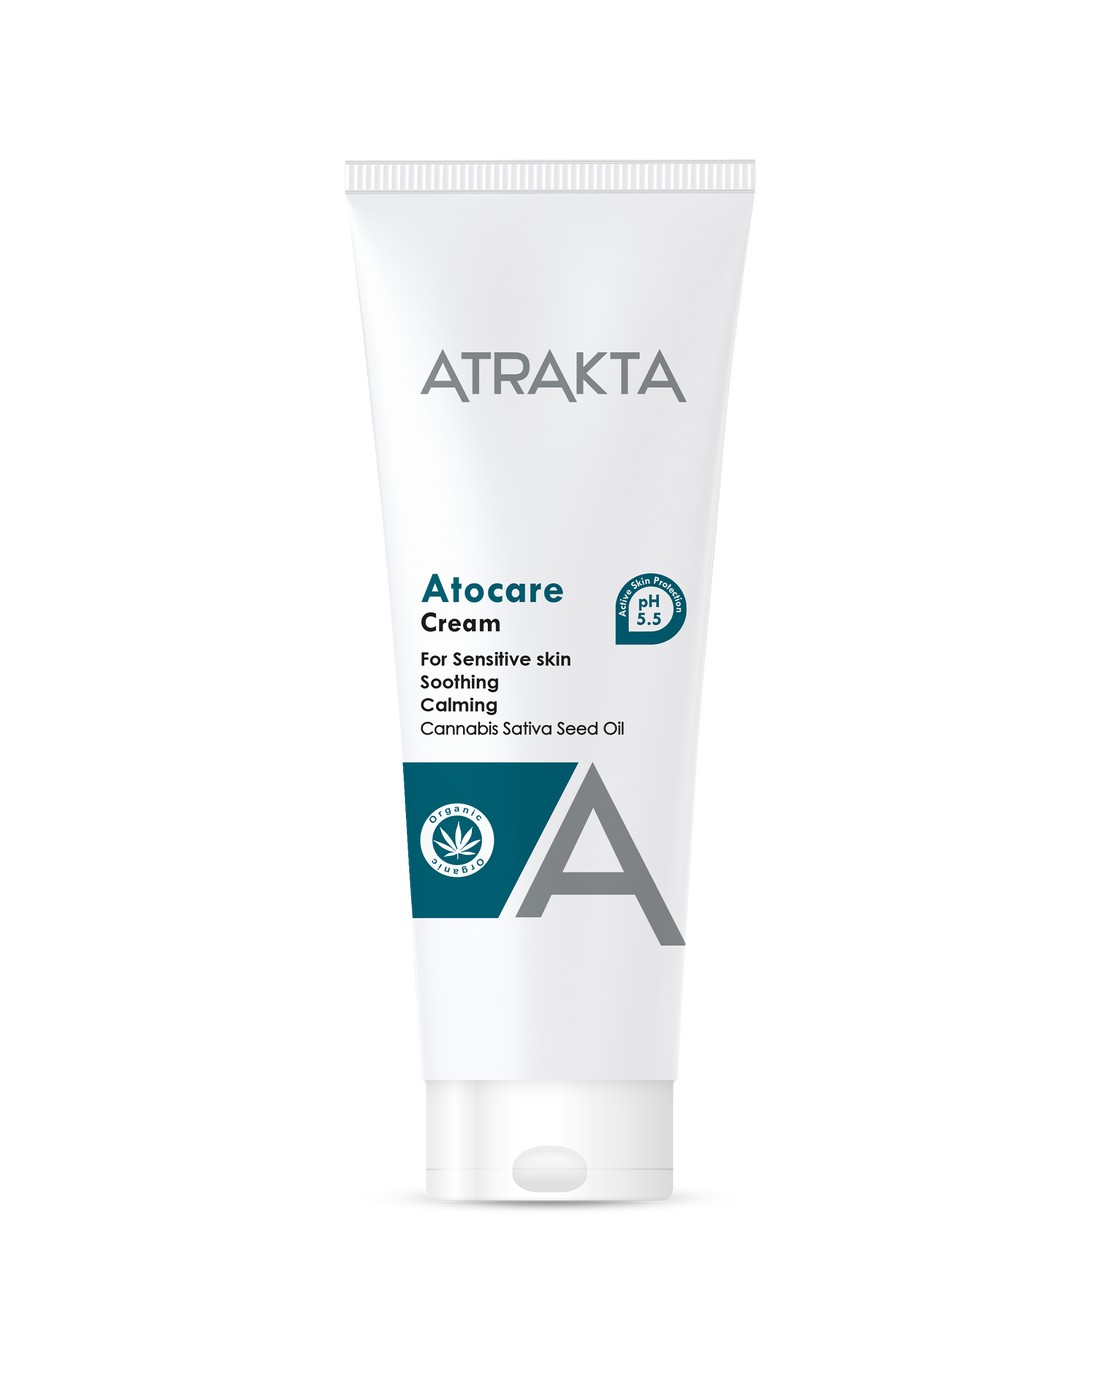 Atrakta Atocare Cream